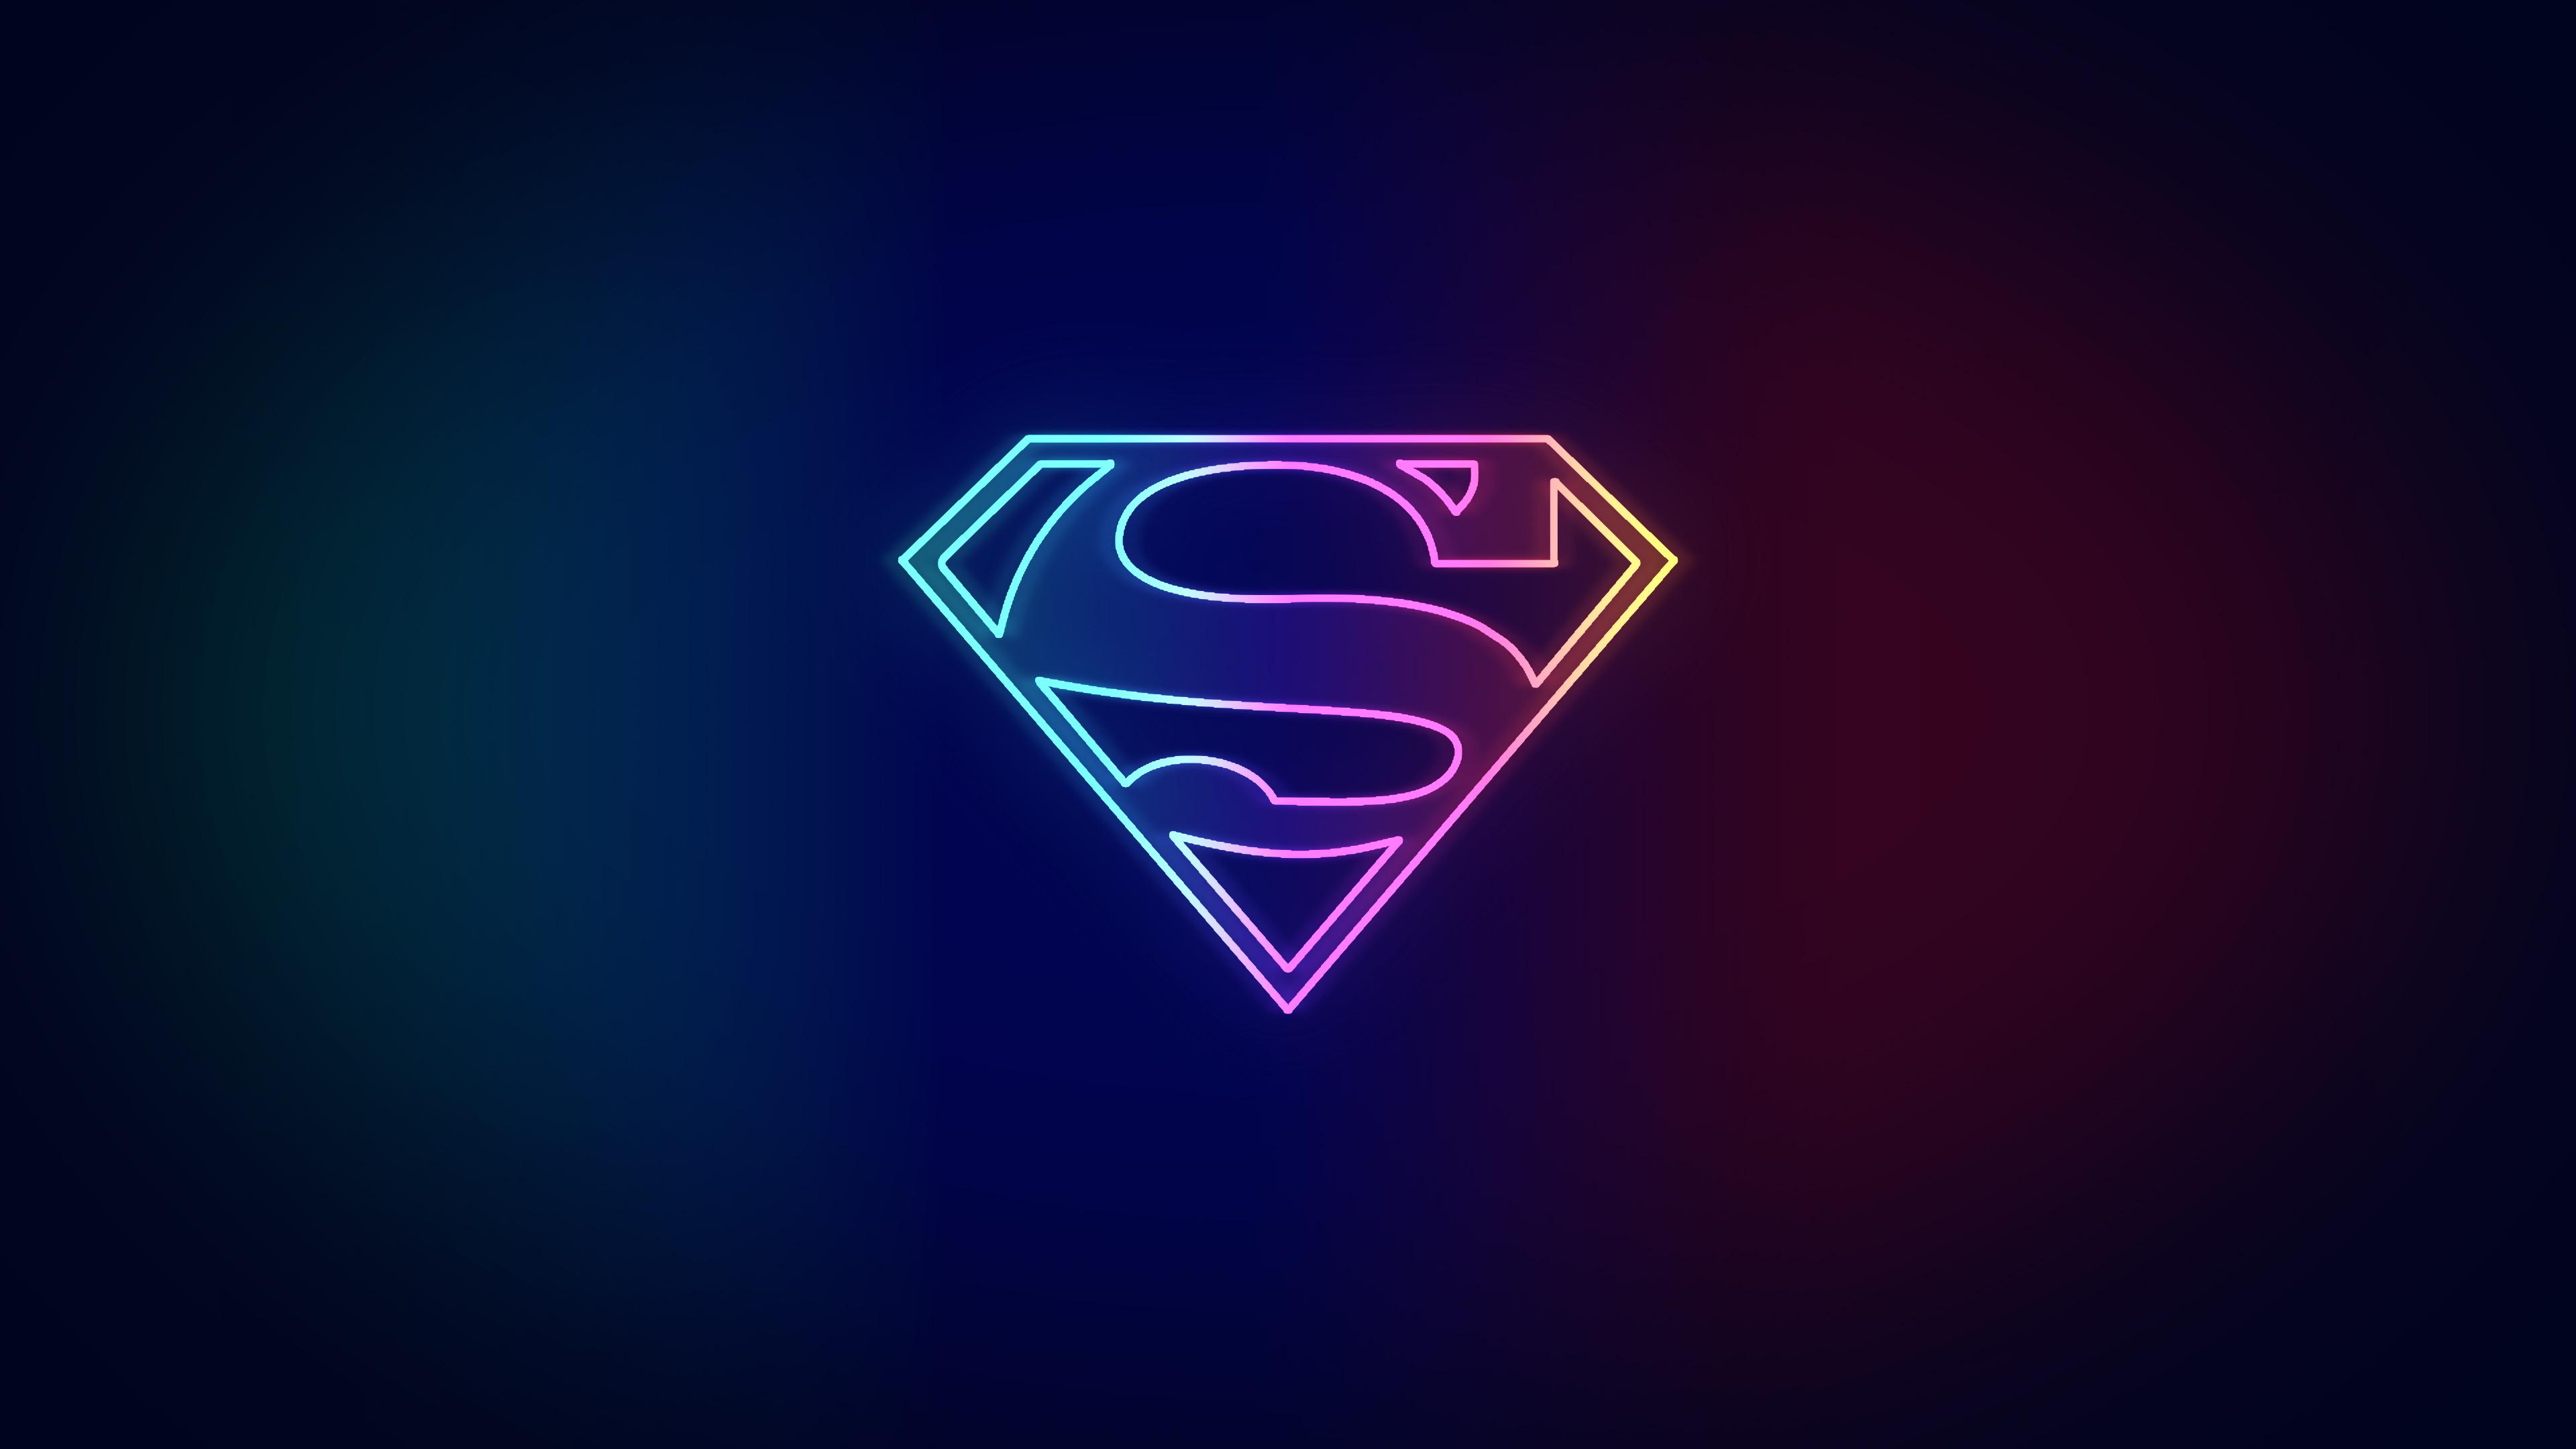 Fan Art] Neon Superman Wallpaper by me[3840 x 2160]